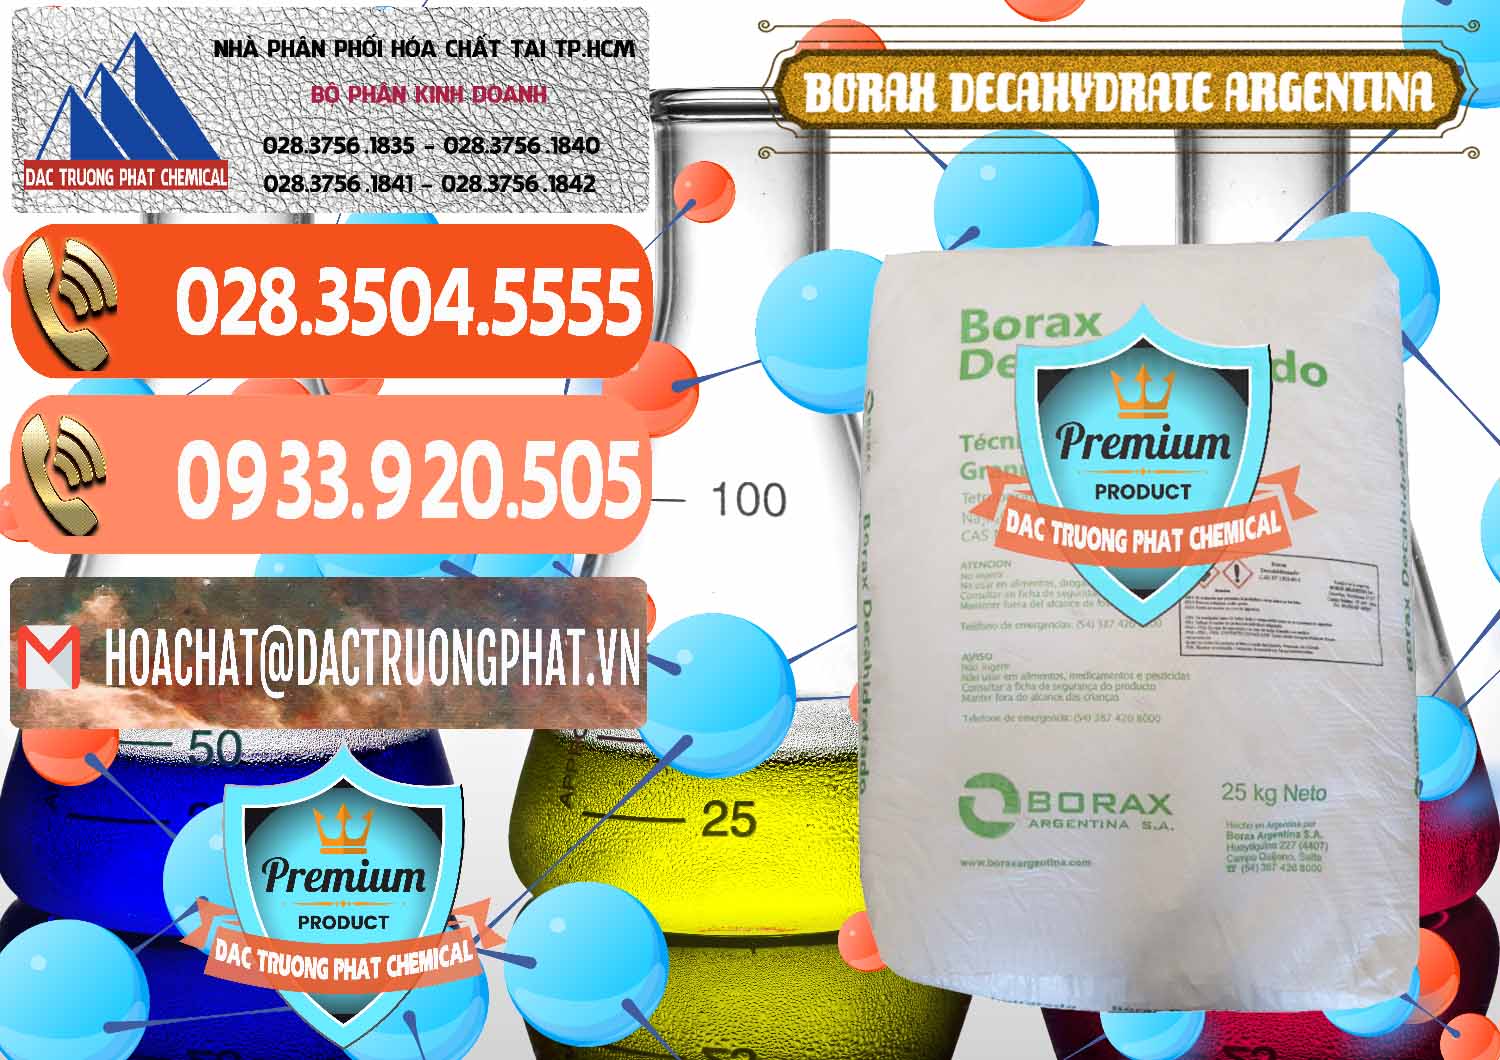 Cty chuyên phân phối & bán Borax Decahydrate Argentina - 0446 - Chuyên phân phối _ cung cấp hóa chất tại TP.HCM - hoachatmientay.com